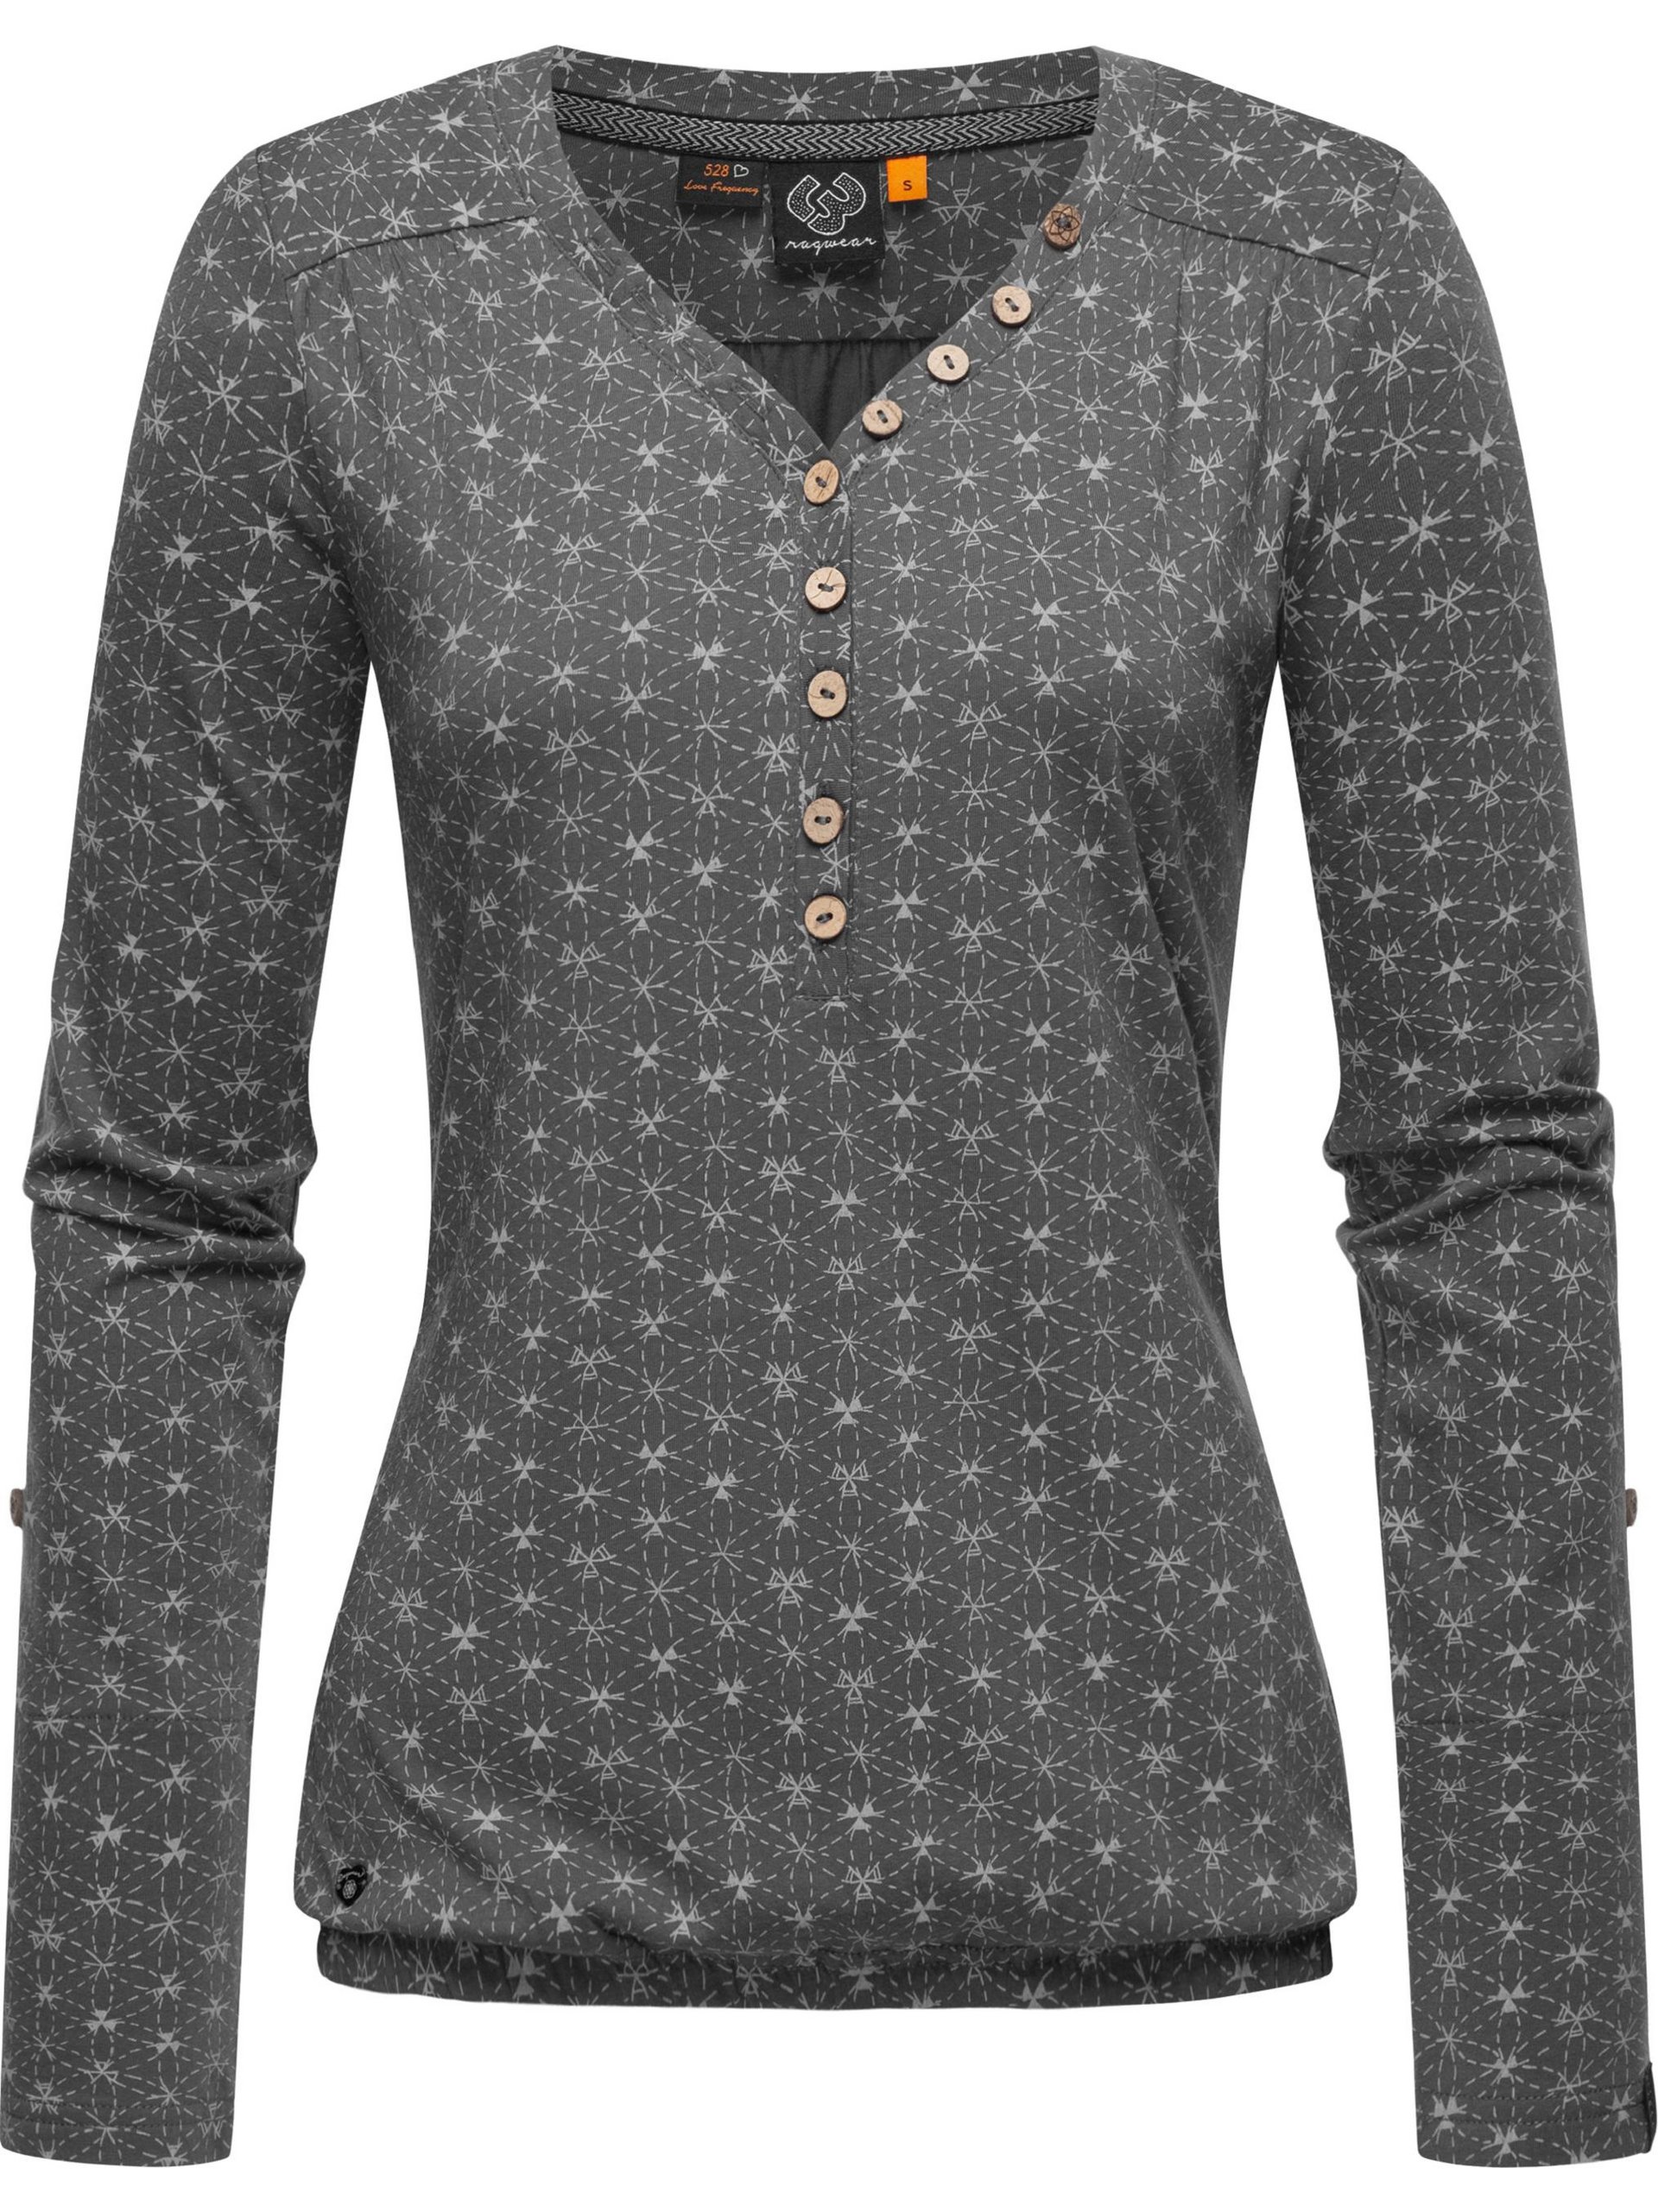 Ragwear Damen Langarmshirt - Pinchi Print online kaufen